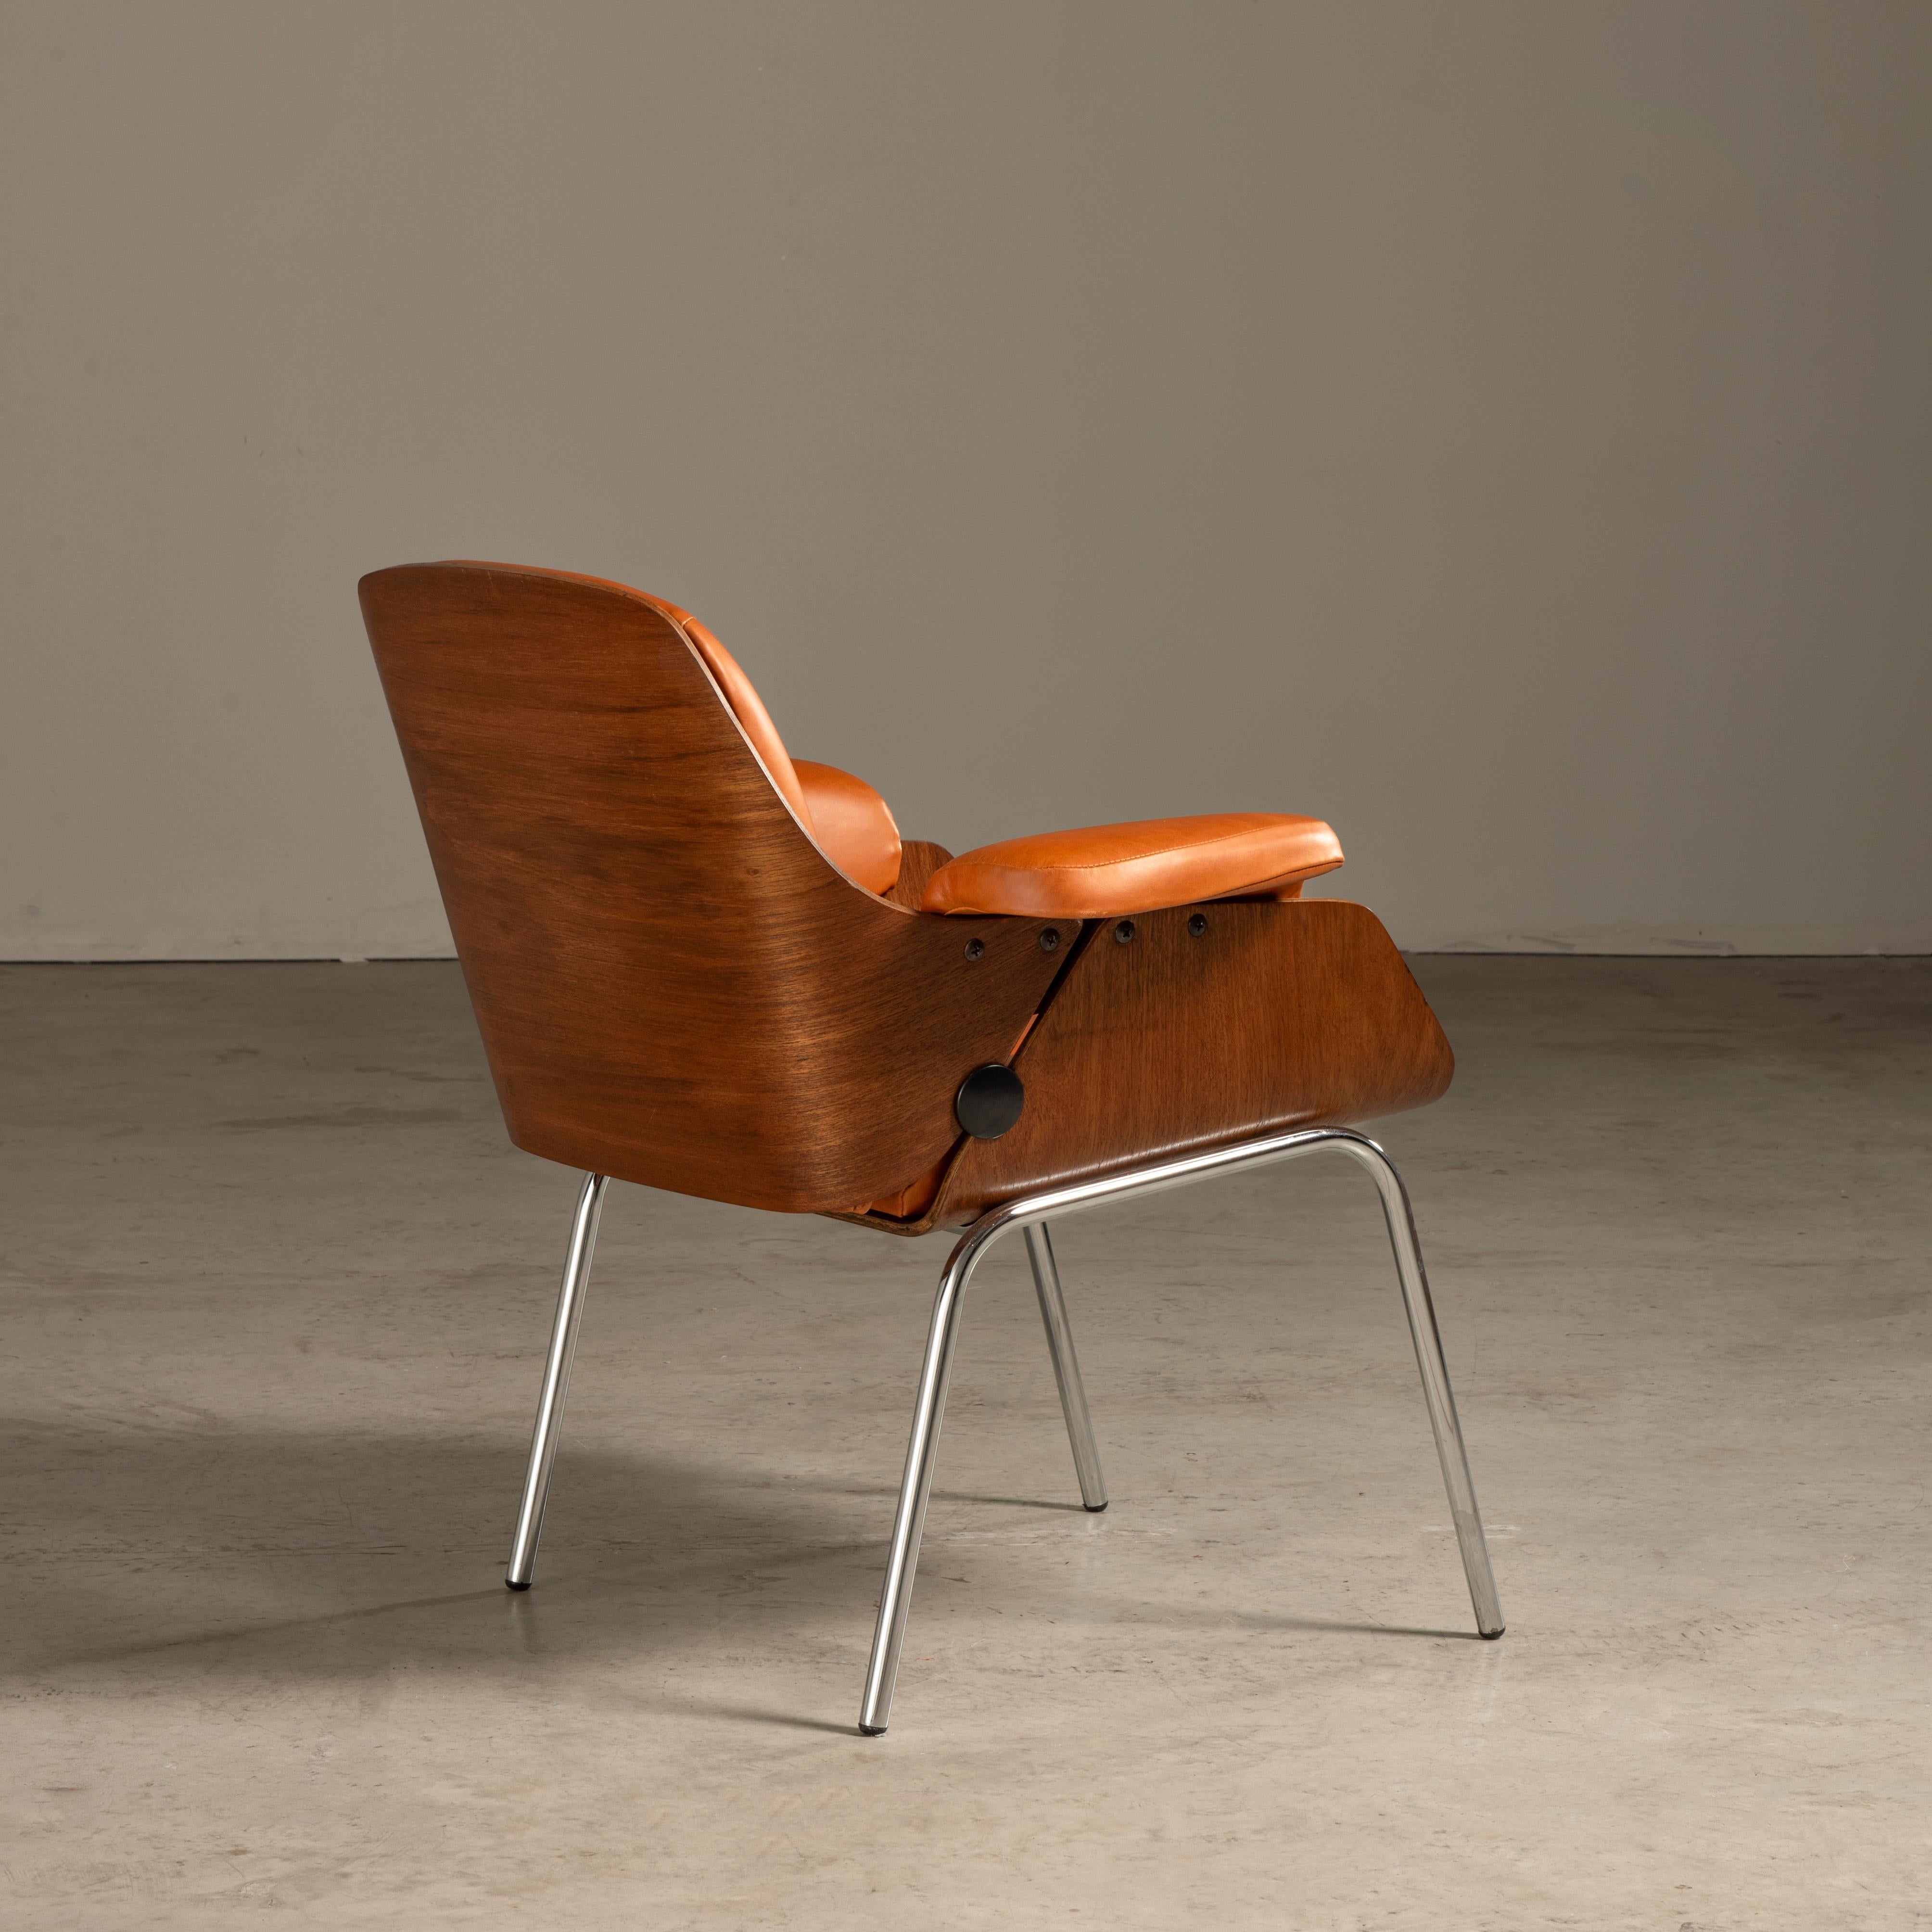 Ce fauteuil conçu par Carlo Fongaro est une pièce exemplaire du mobilier brésilien du milieu du XXe siècle. La chaise combine l'utilisation du bois et du cuir, des matériaux couramment utilisés dans les meubles brésiliens de l'époque, connus pour